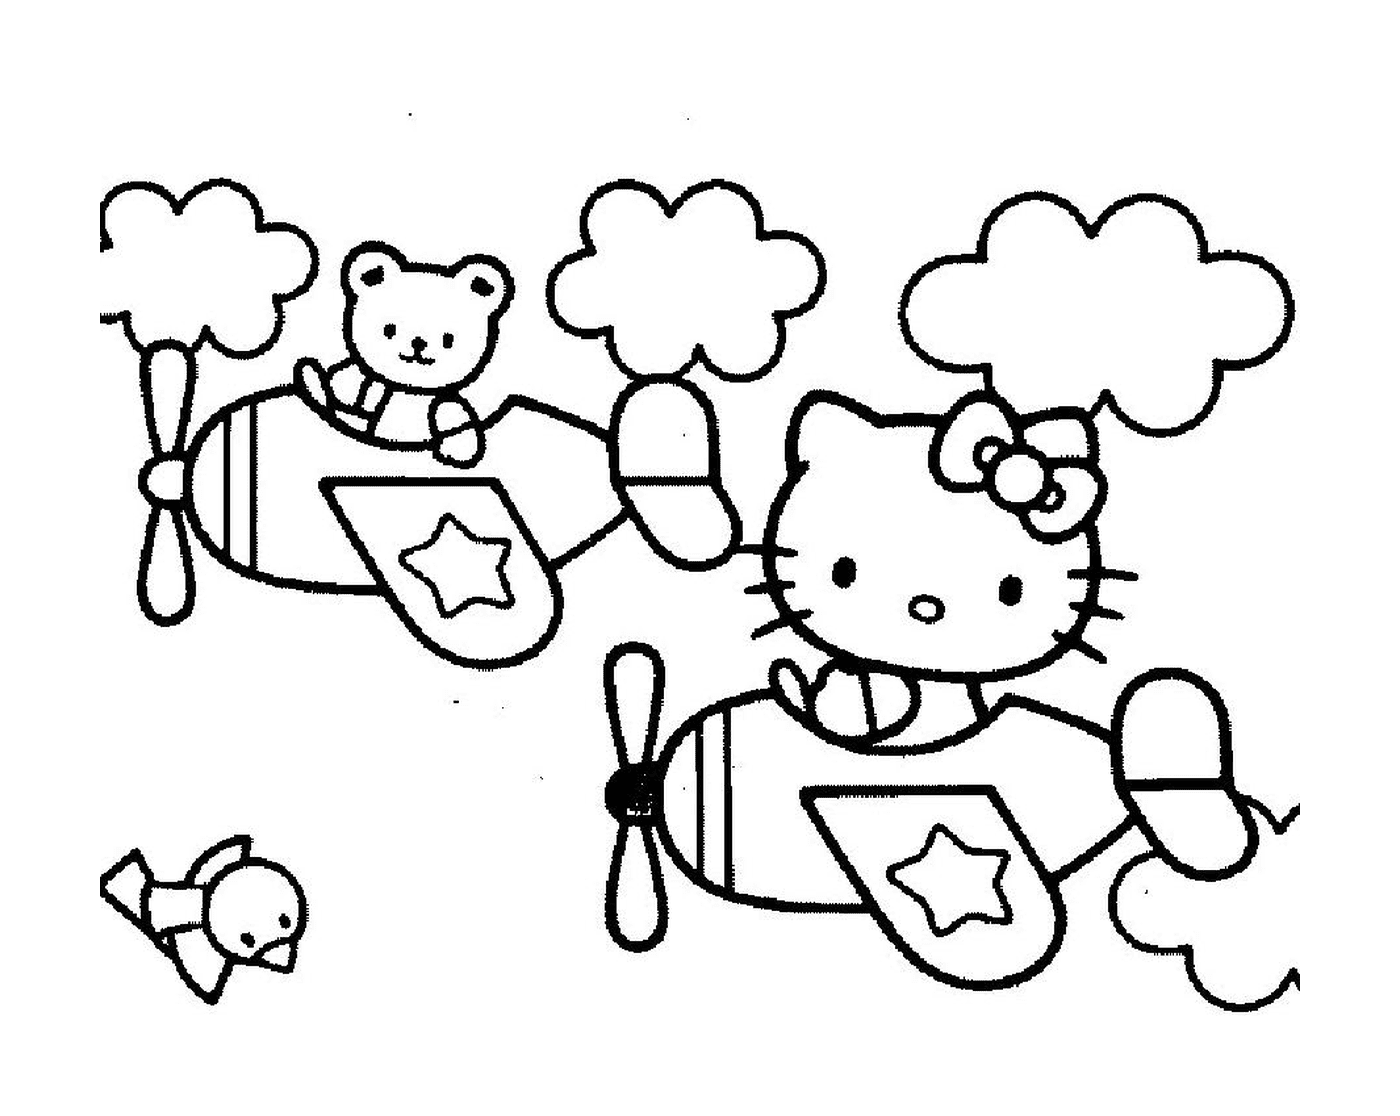  Stampa di Hello Kitty da stampare 